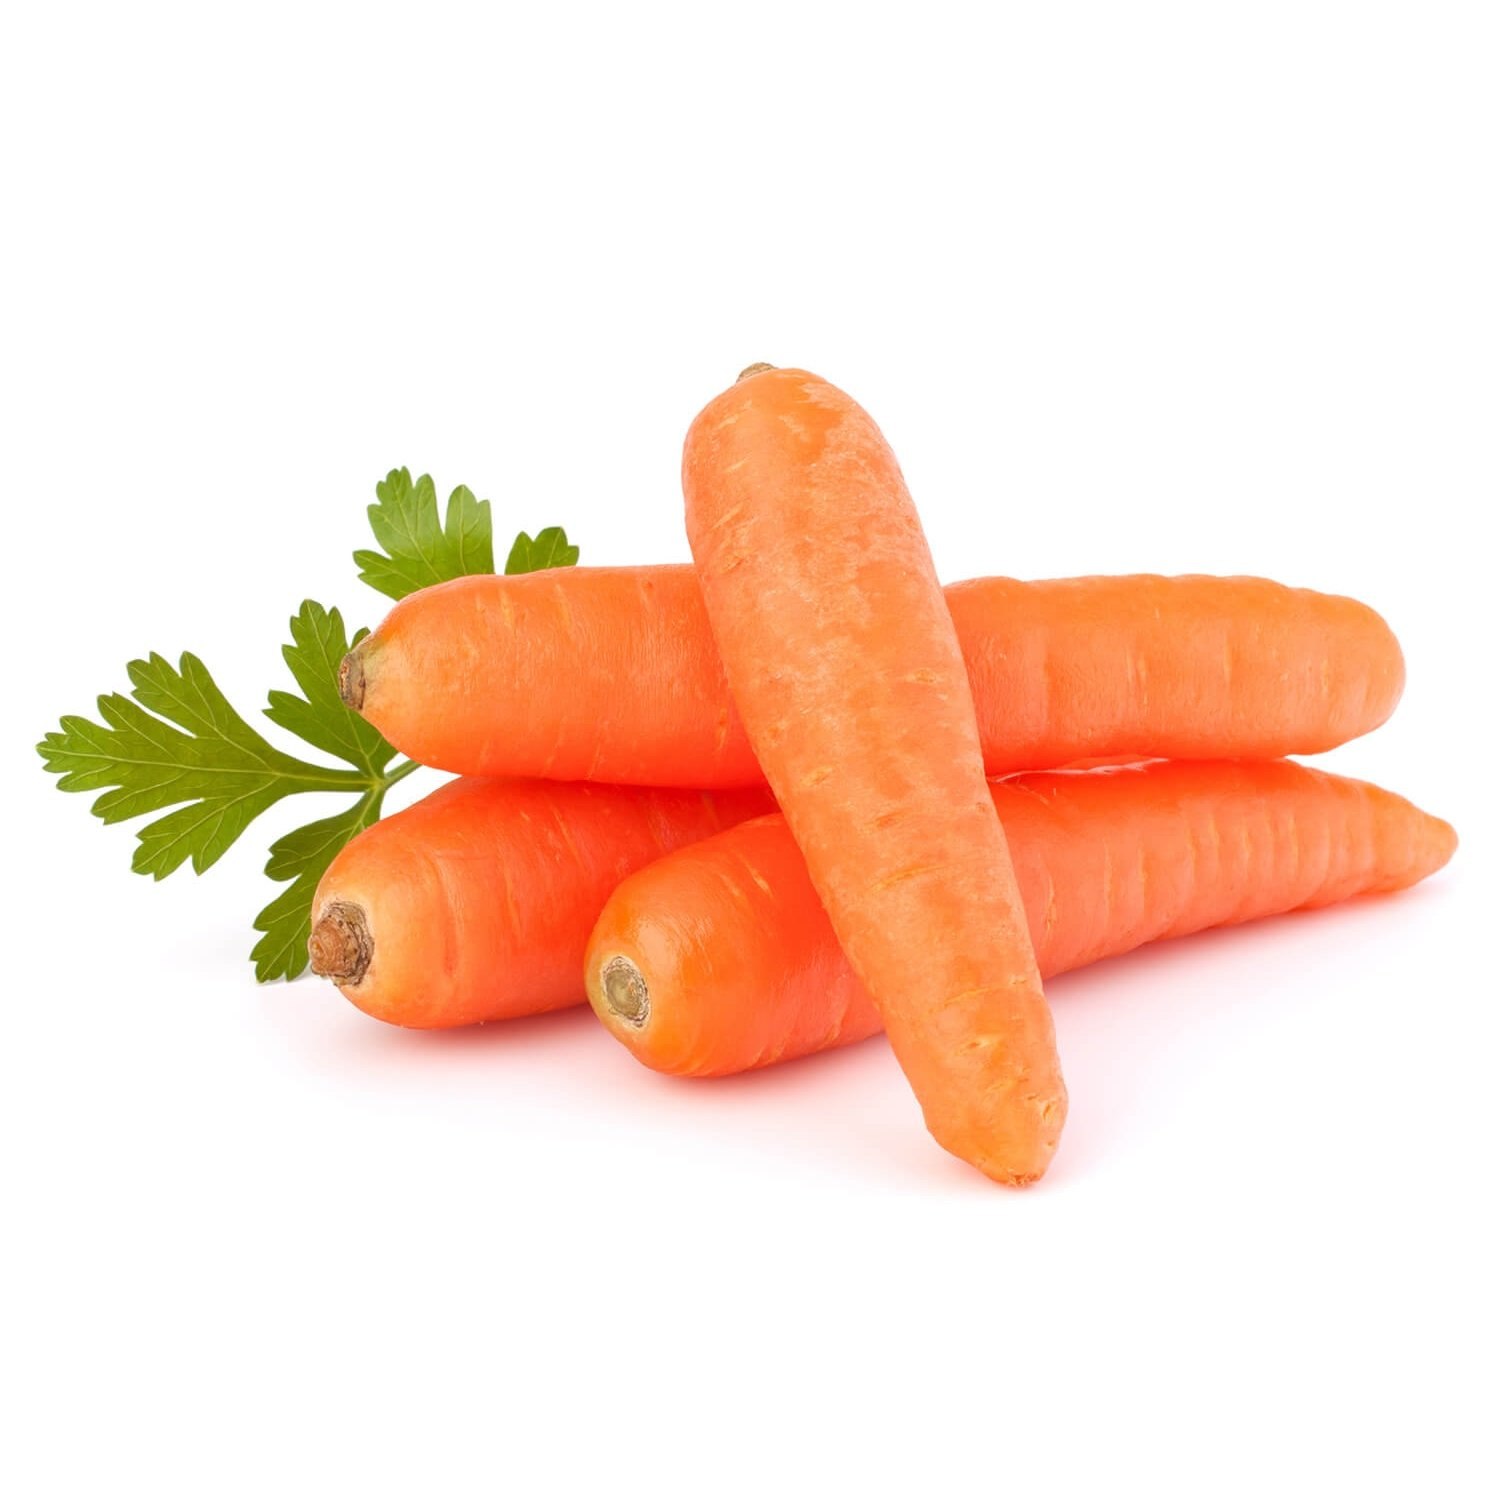 фото моркови на белом фоне